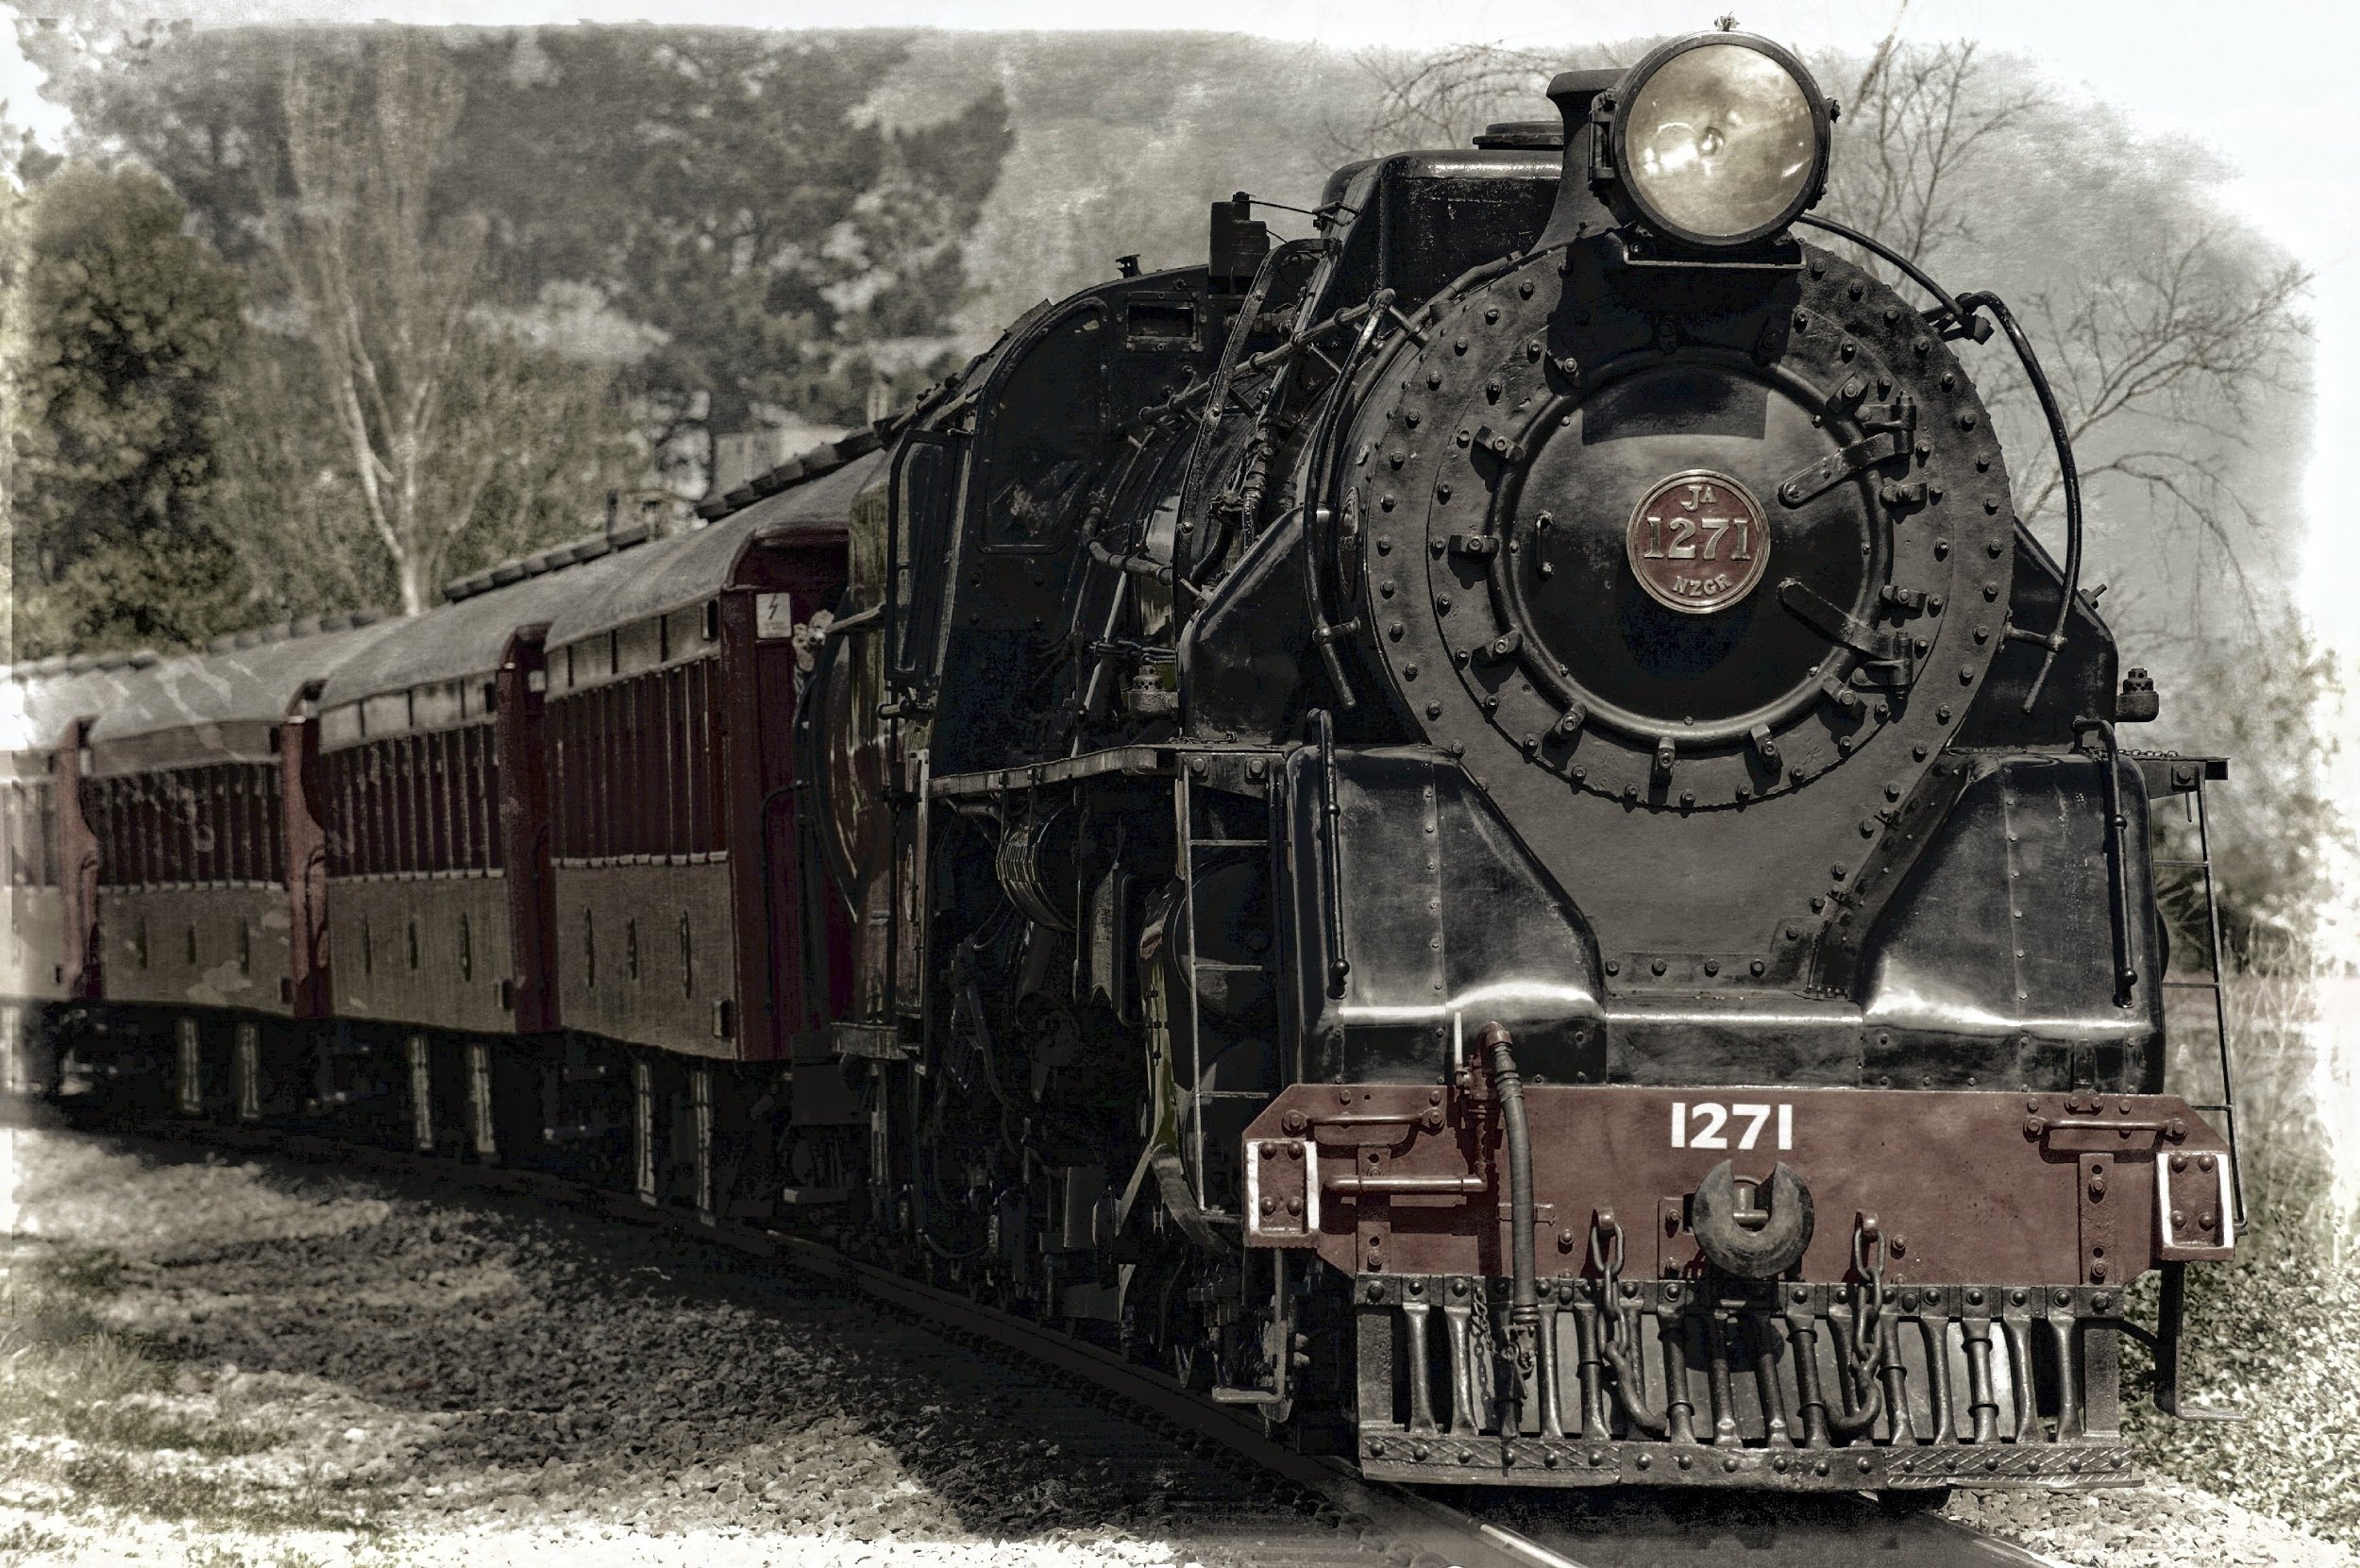 The Blogging Steam Train